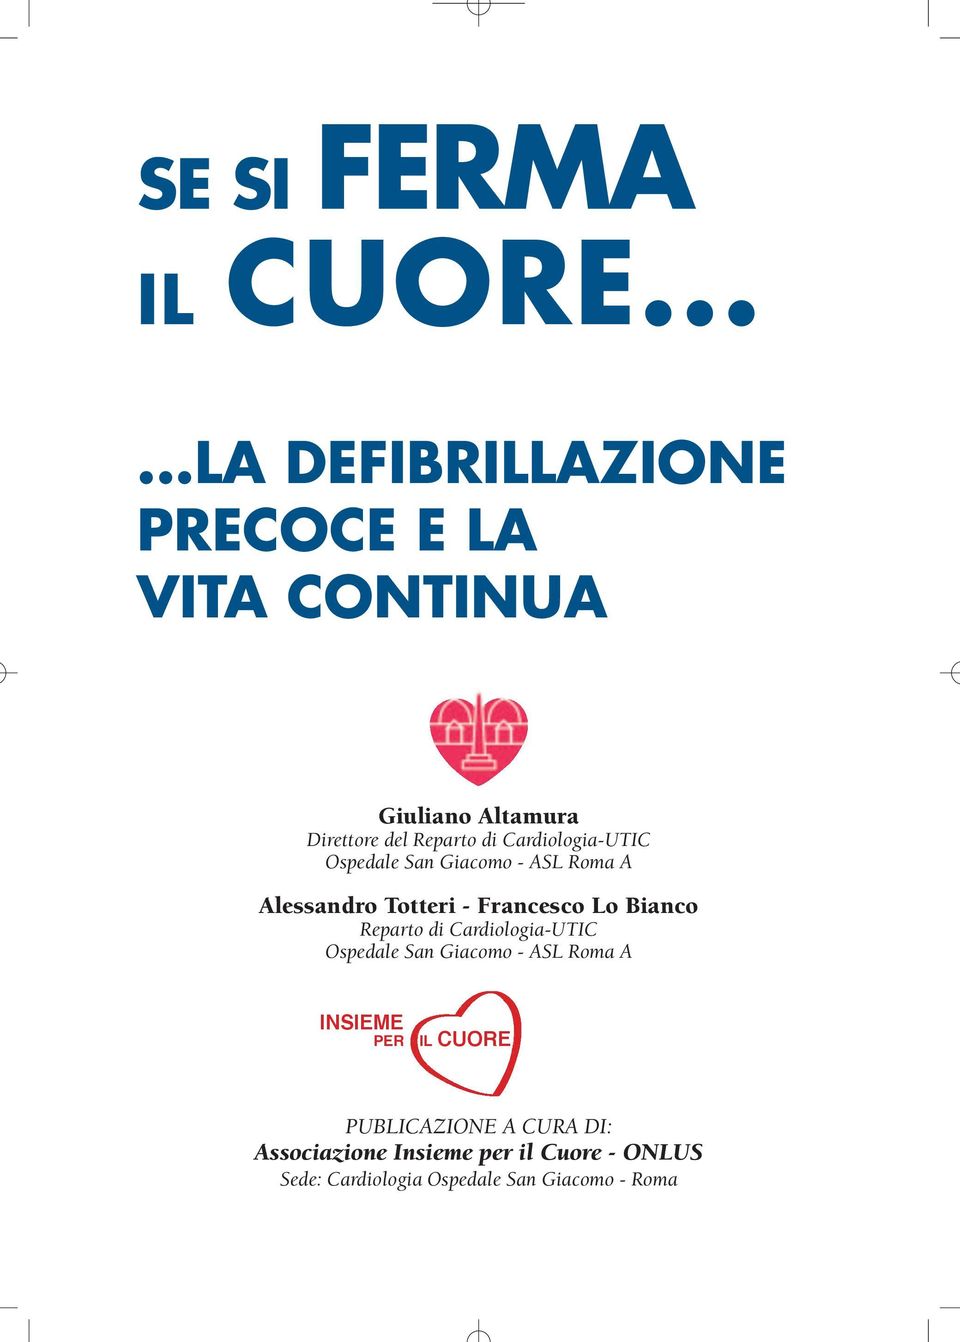 Cardiologia-UTIC Ospedale San Giacomo - ASL Roma A Alessandro Totteri - Francesco Lo Bianco Reparto